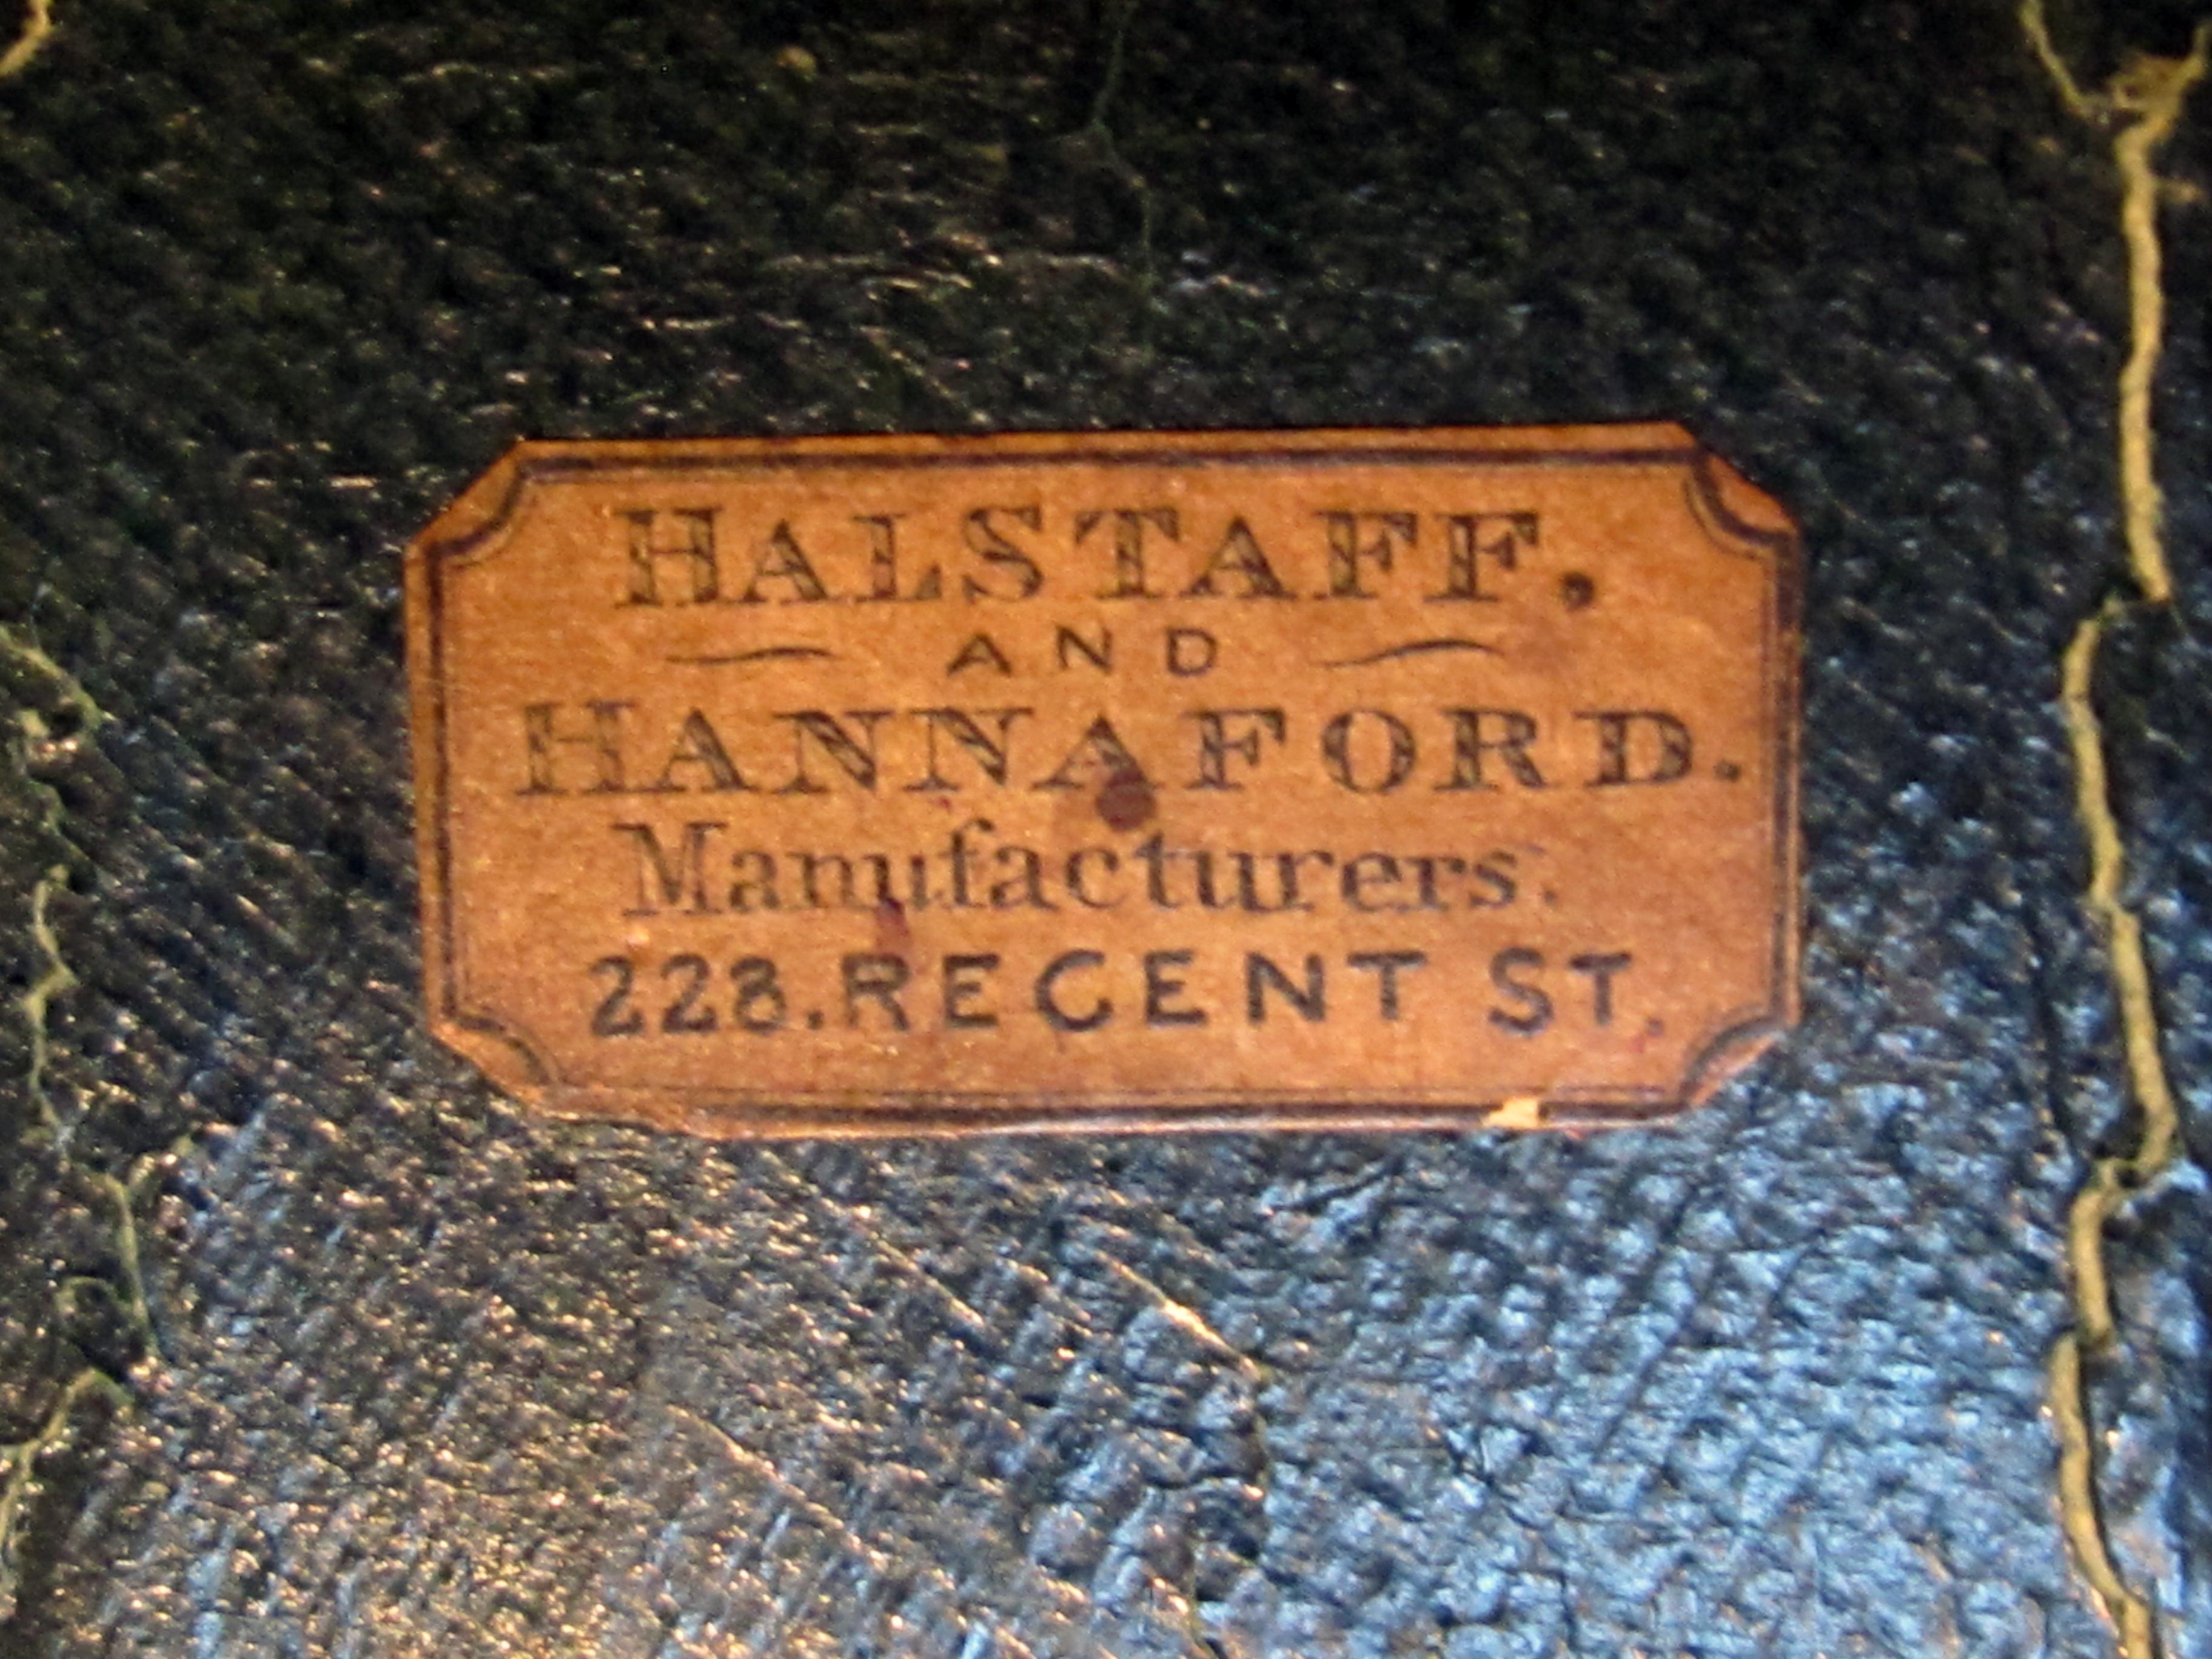 Good Quality English Victorian Domed Burl Walnut Box by Halstaff & Hannaford 2